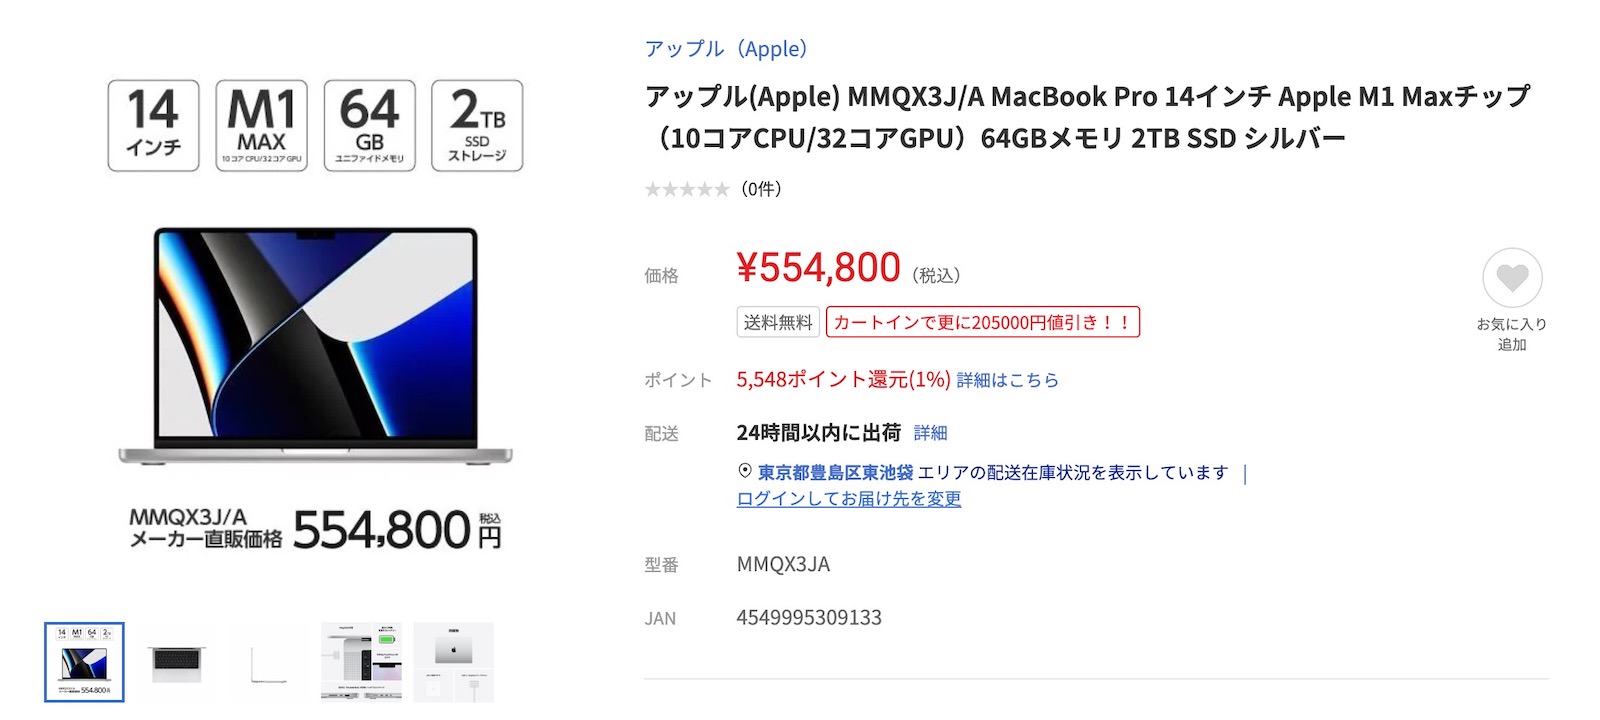 yamada-denki-web-macbookpro-sale-2.jpg